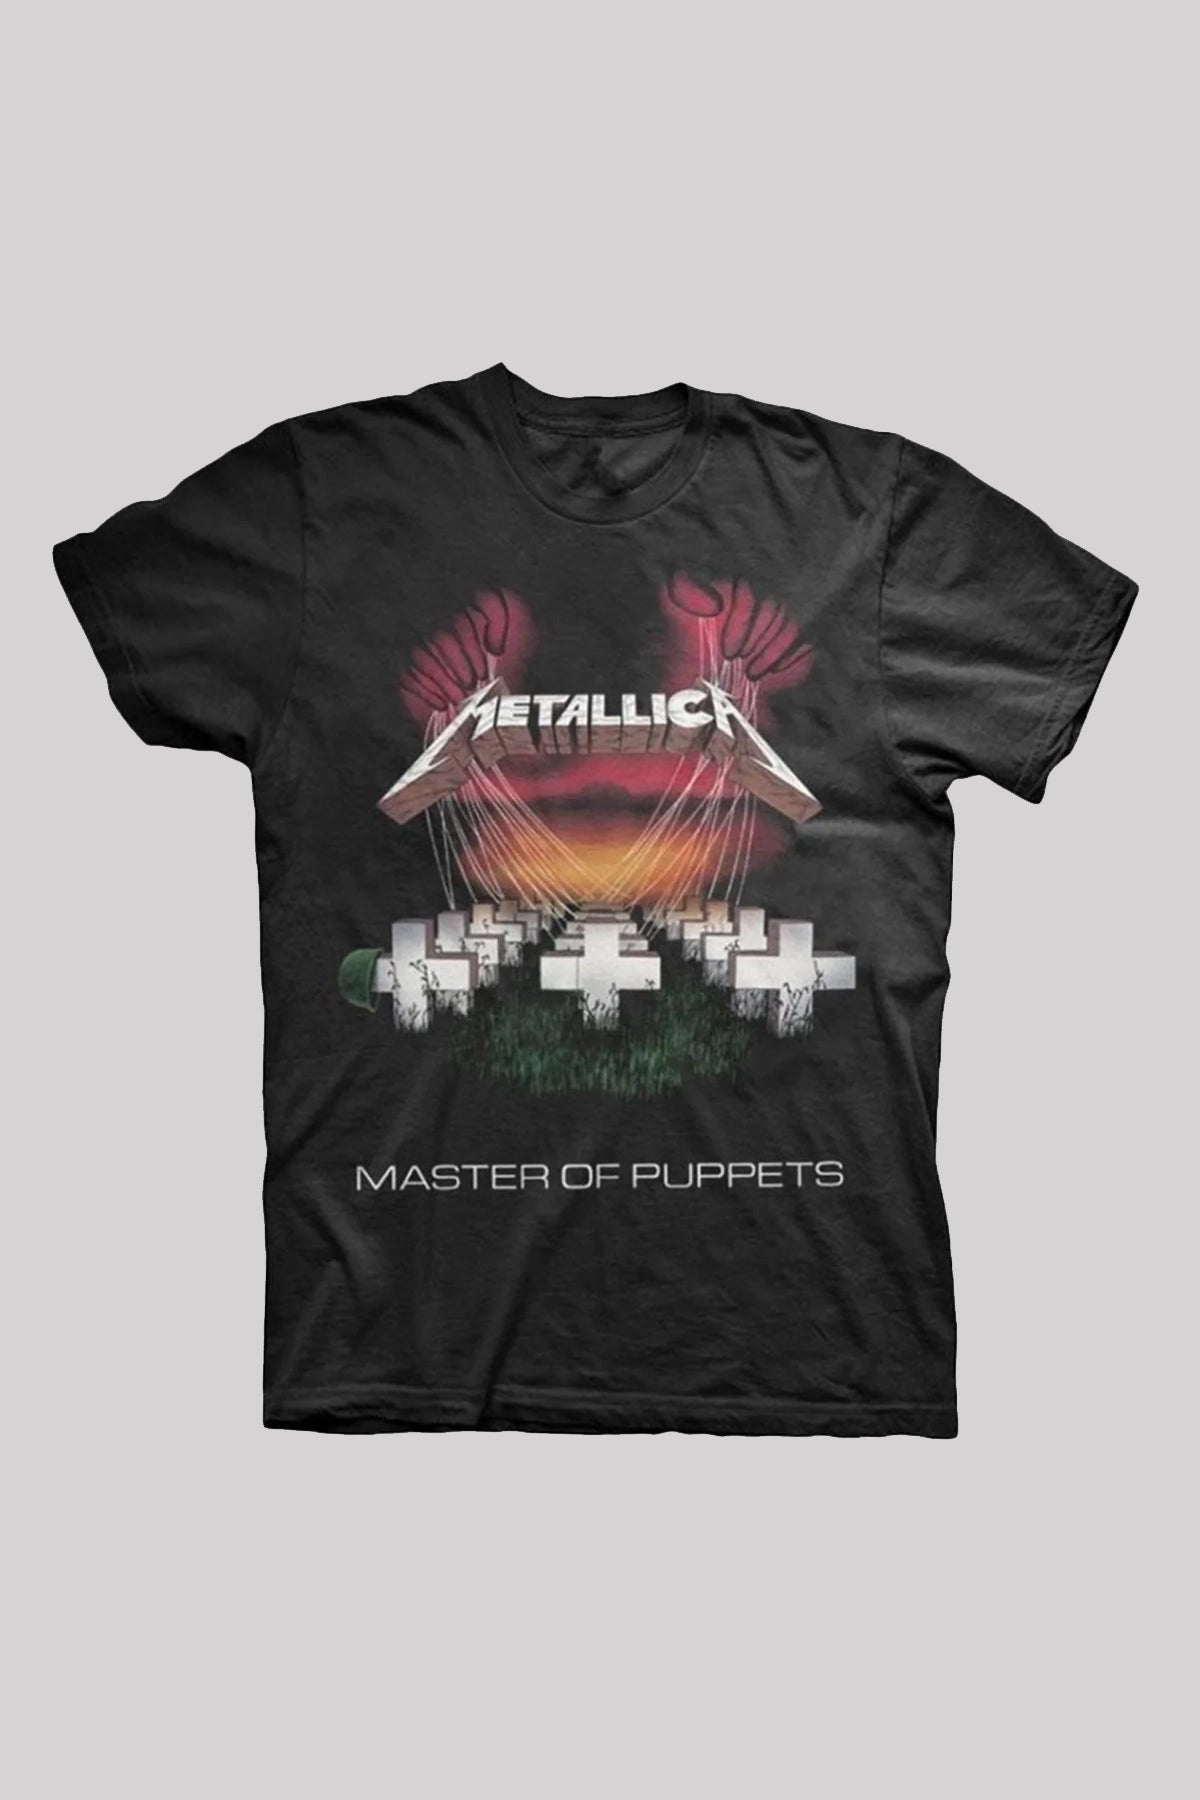 Metallica Master Of Puppets European Tour '86 T-Shirt